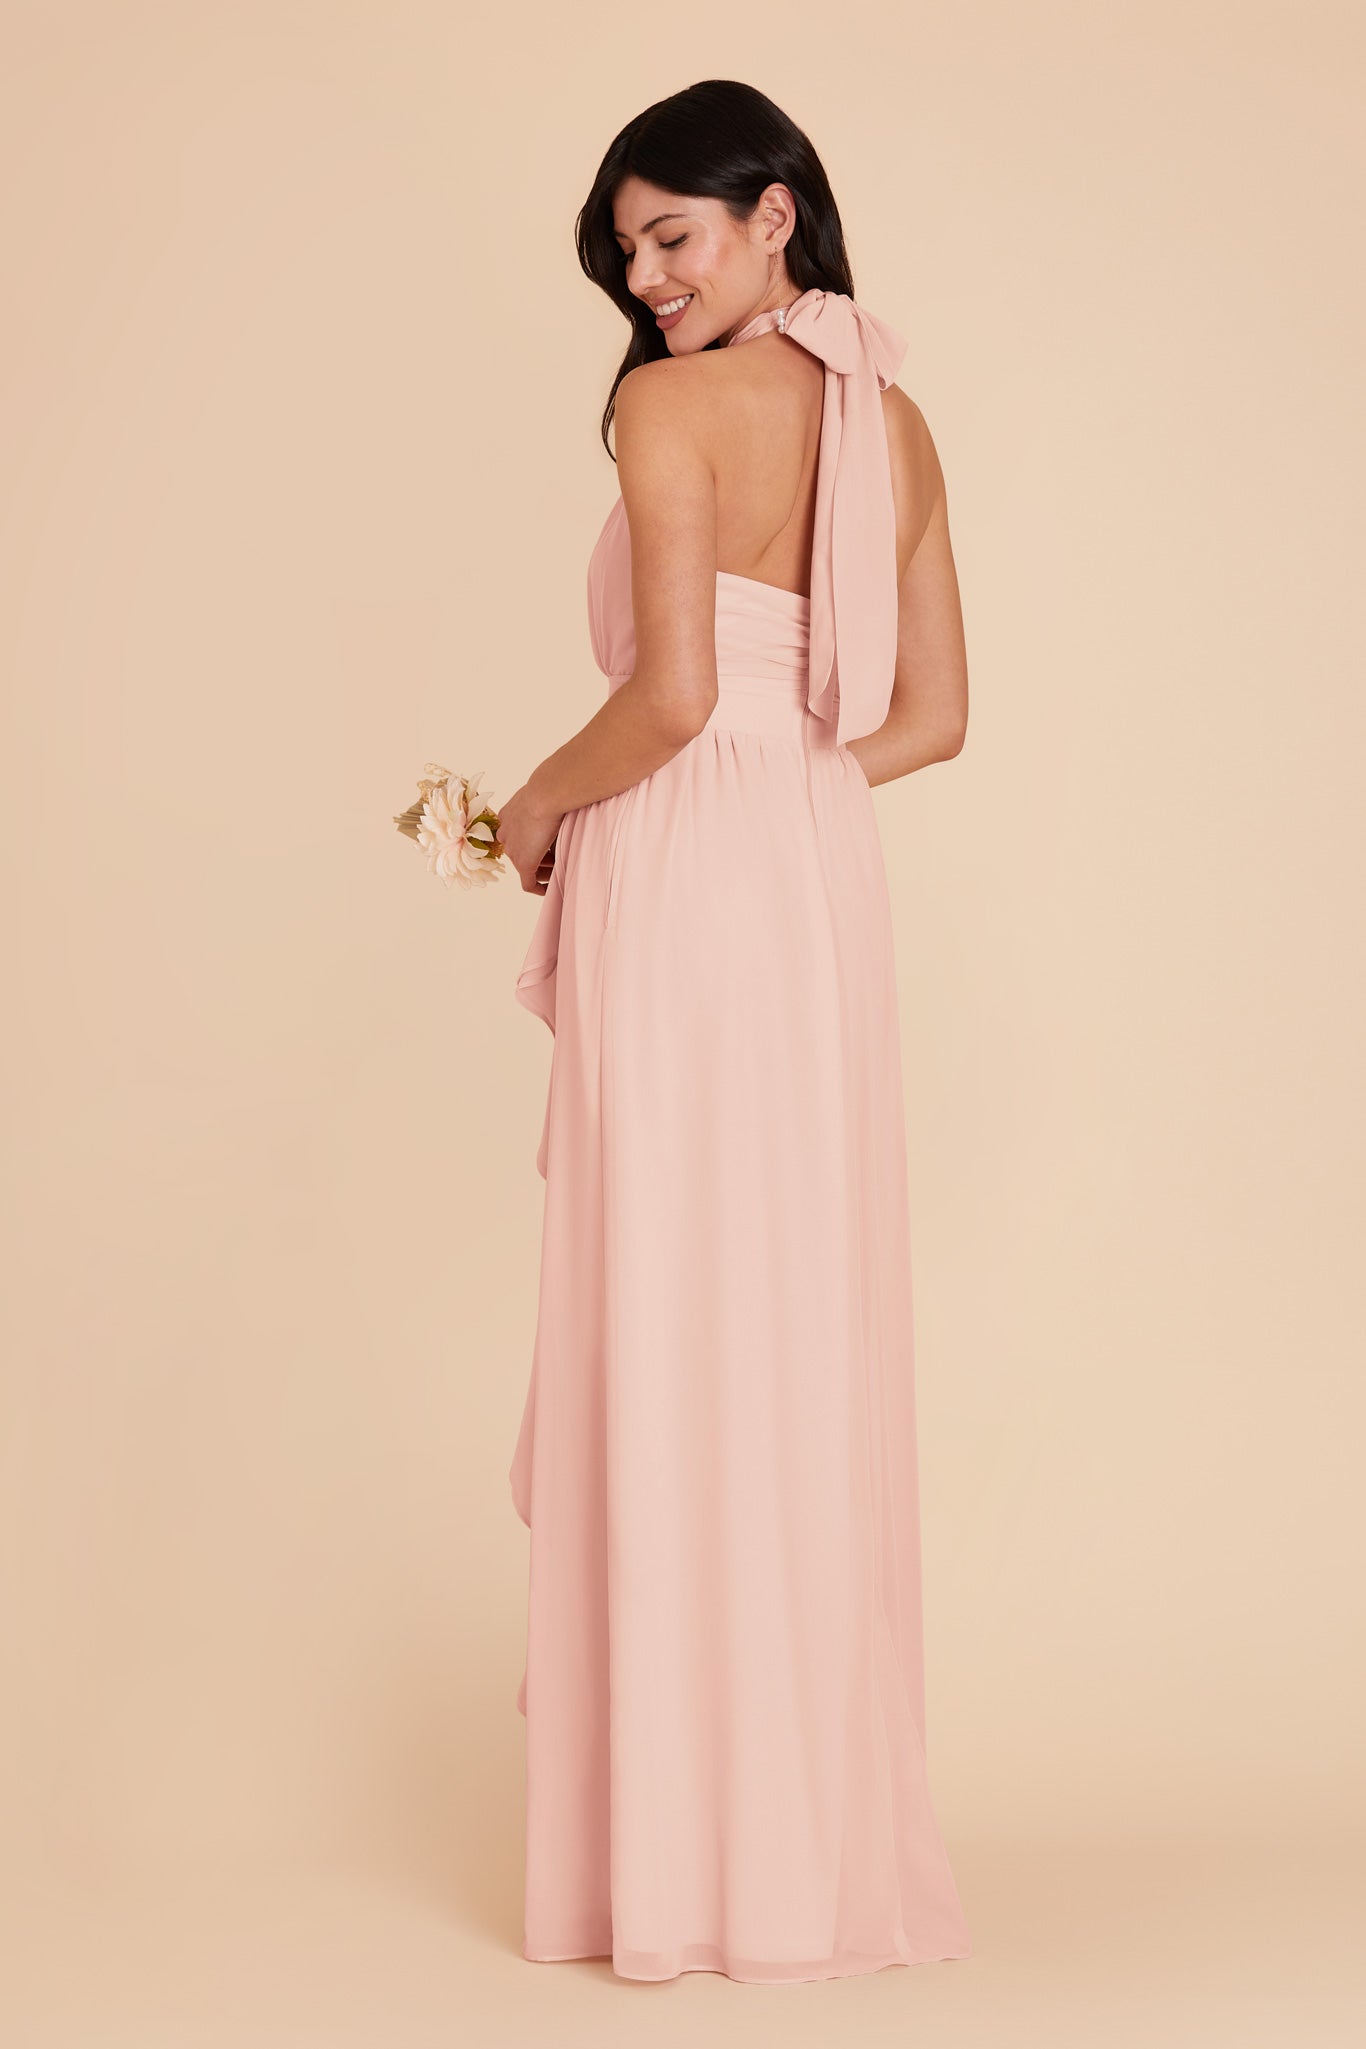 Blush Pink Joyce Chiffon Dress by Birdy Grey